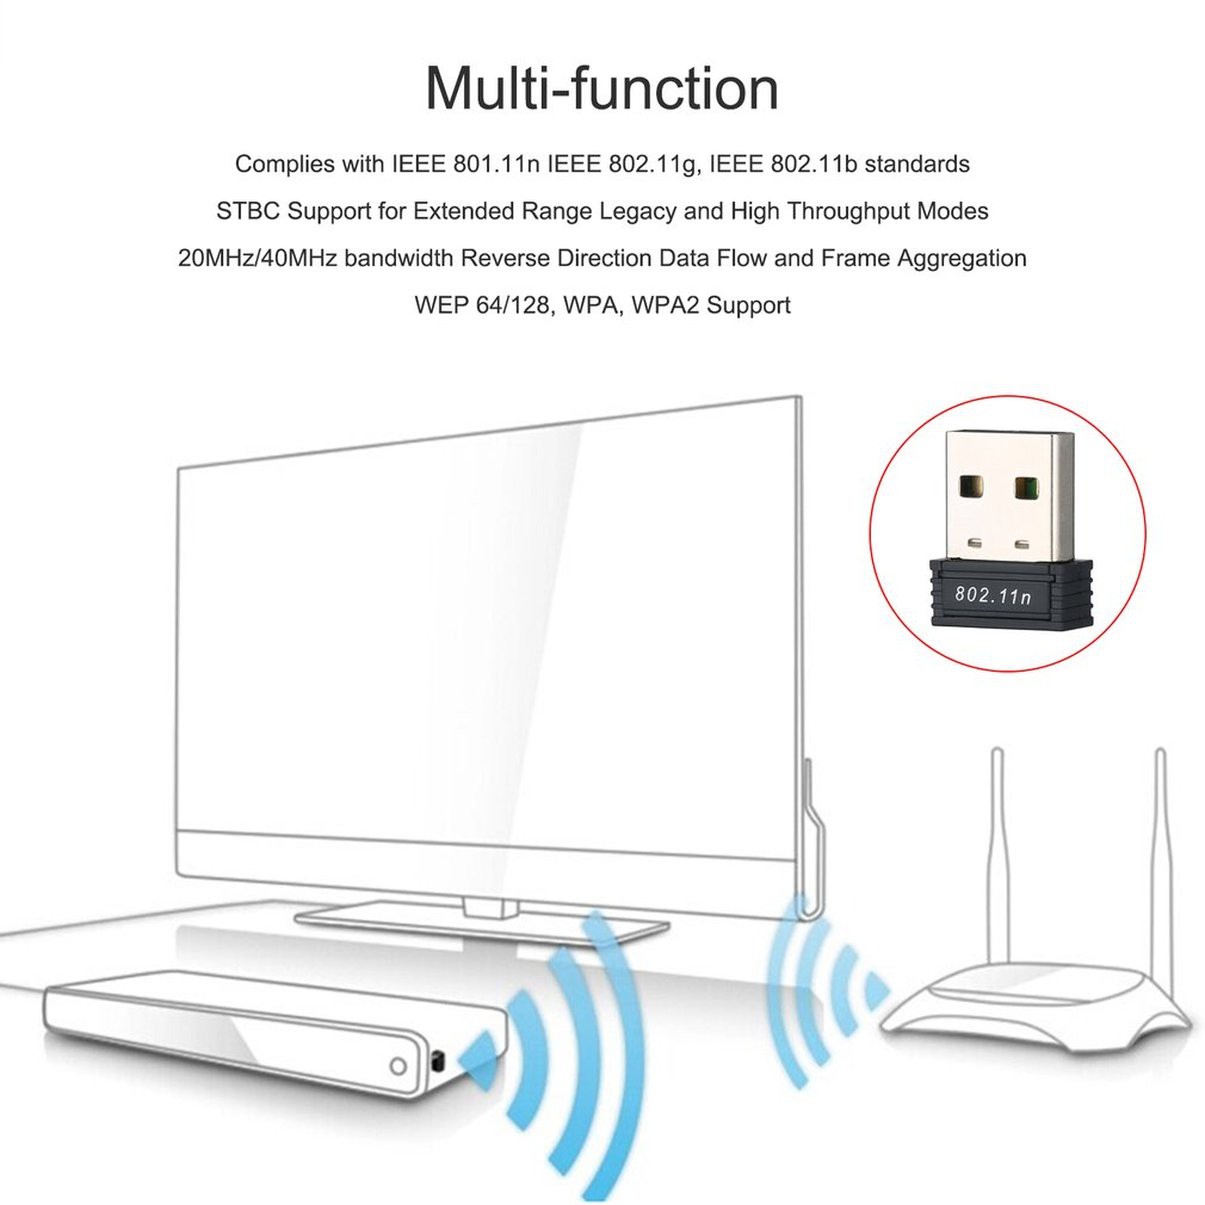 150M Mini USB WiFi Wireless Network LAN Card 802.11n/g/b USB Receivers Adapter